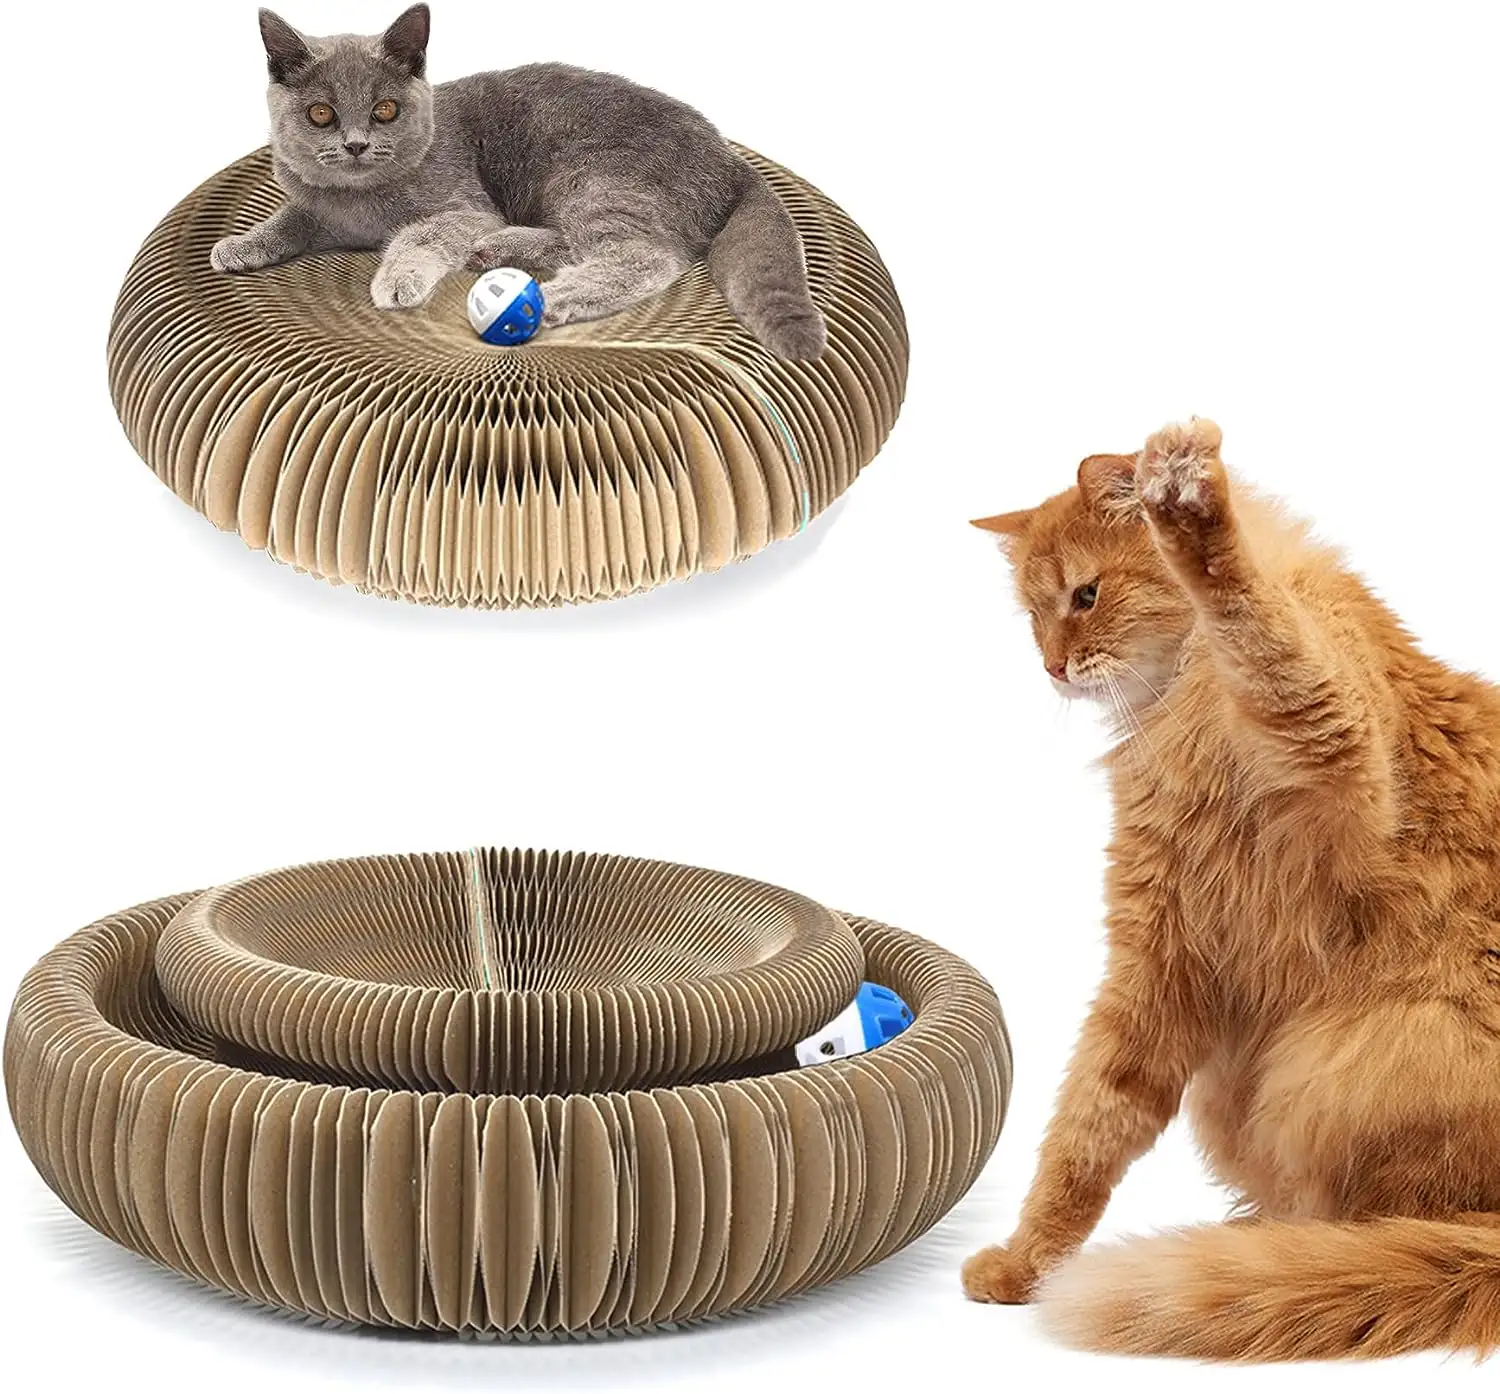 Toptan büyük sihirli Organ kedi oyuncak katlanabilir oluklu Scratcher kedi akordeon oyuncak çan topu ile